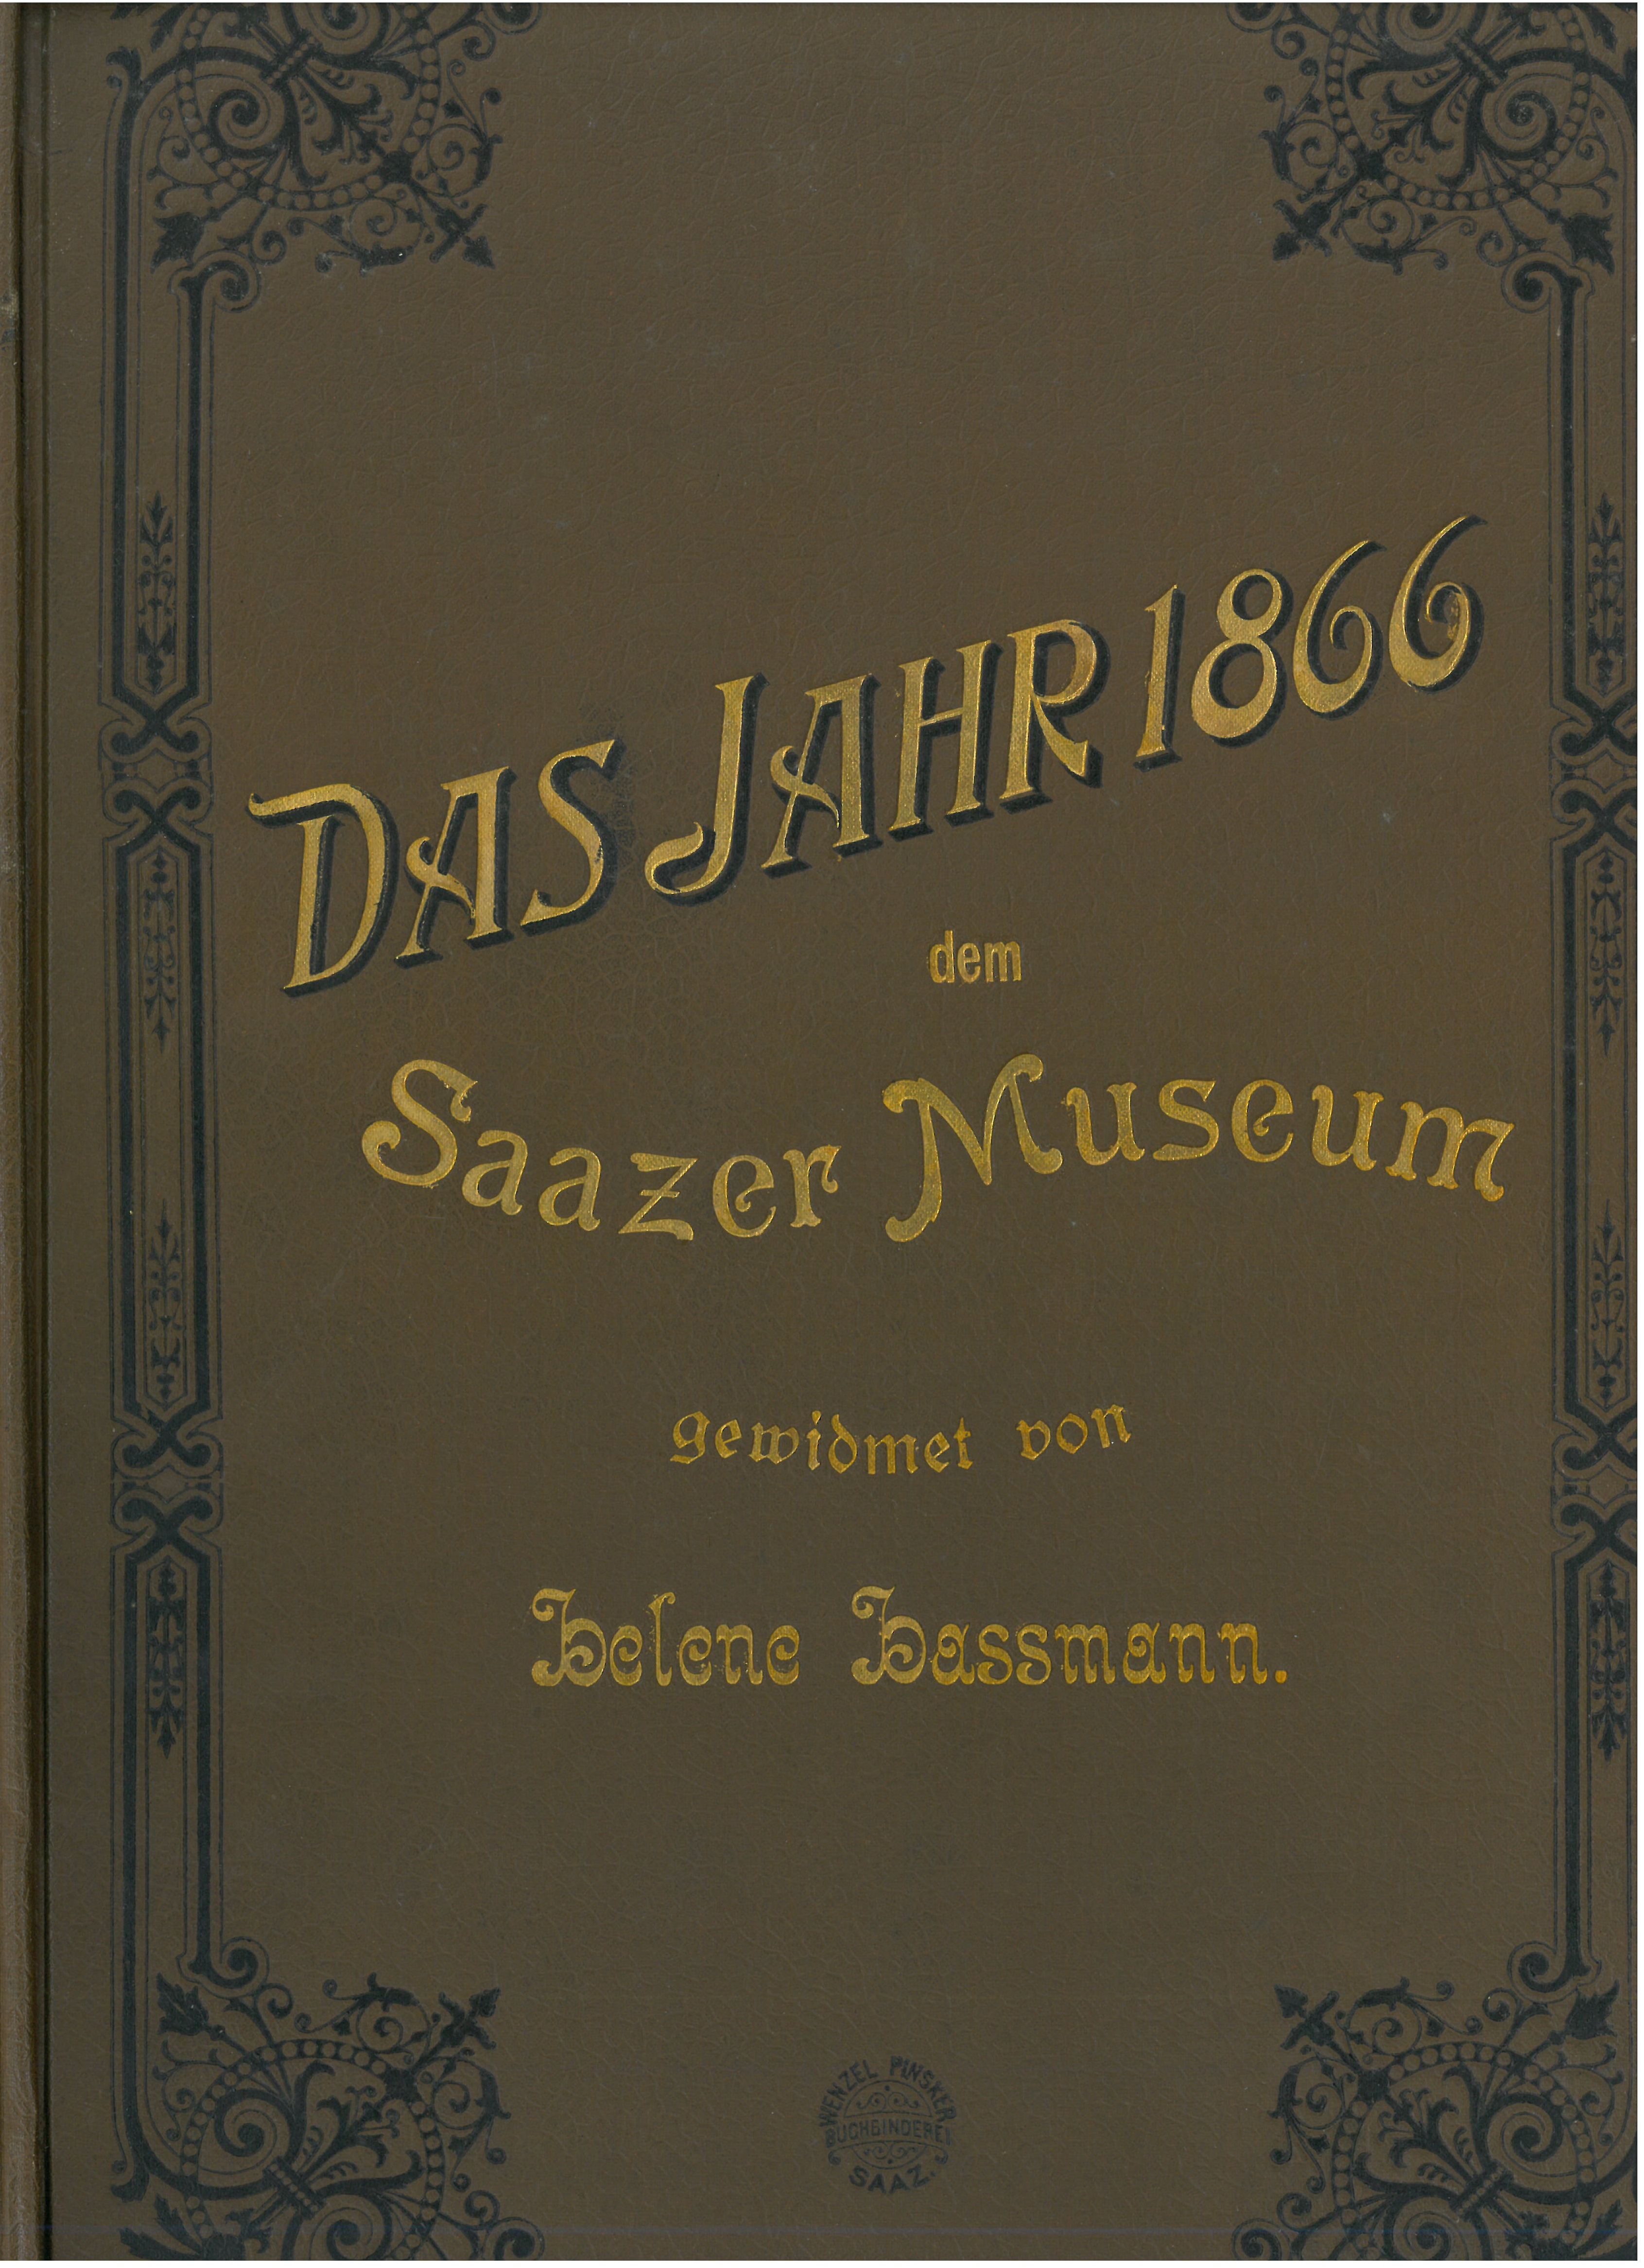 desky věnované Helenou Hassmannovou muzeu v Žatci roku 1902